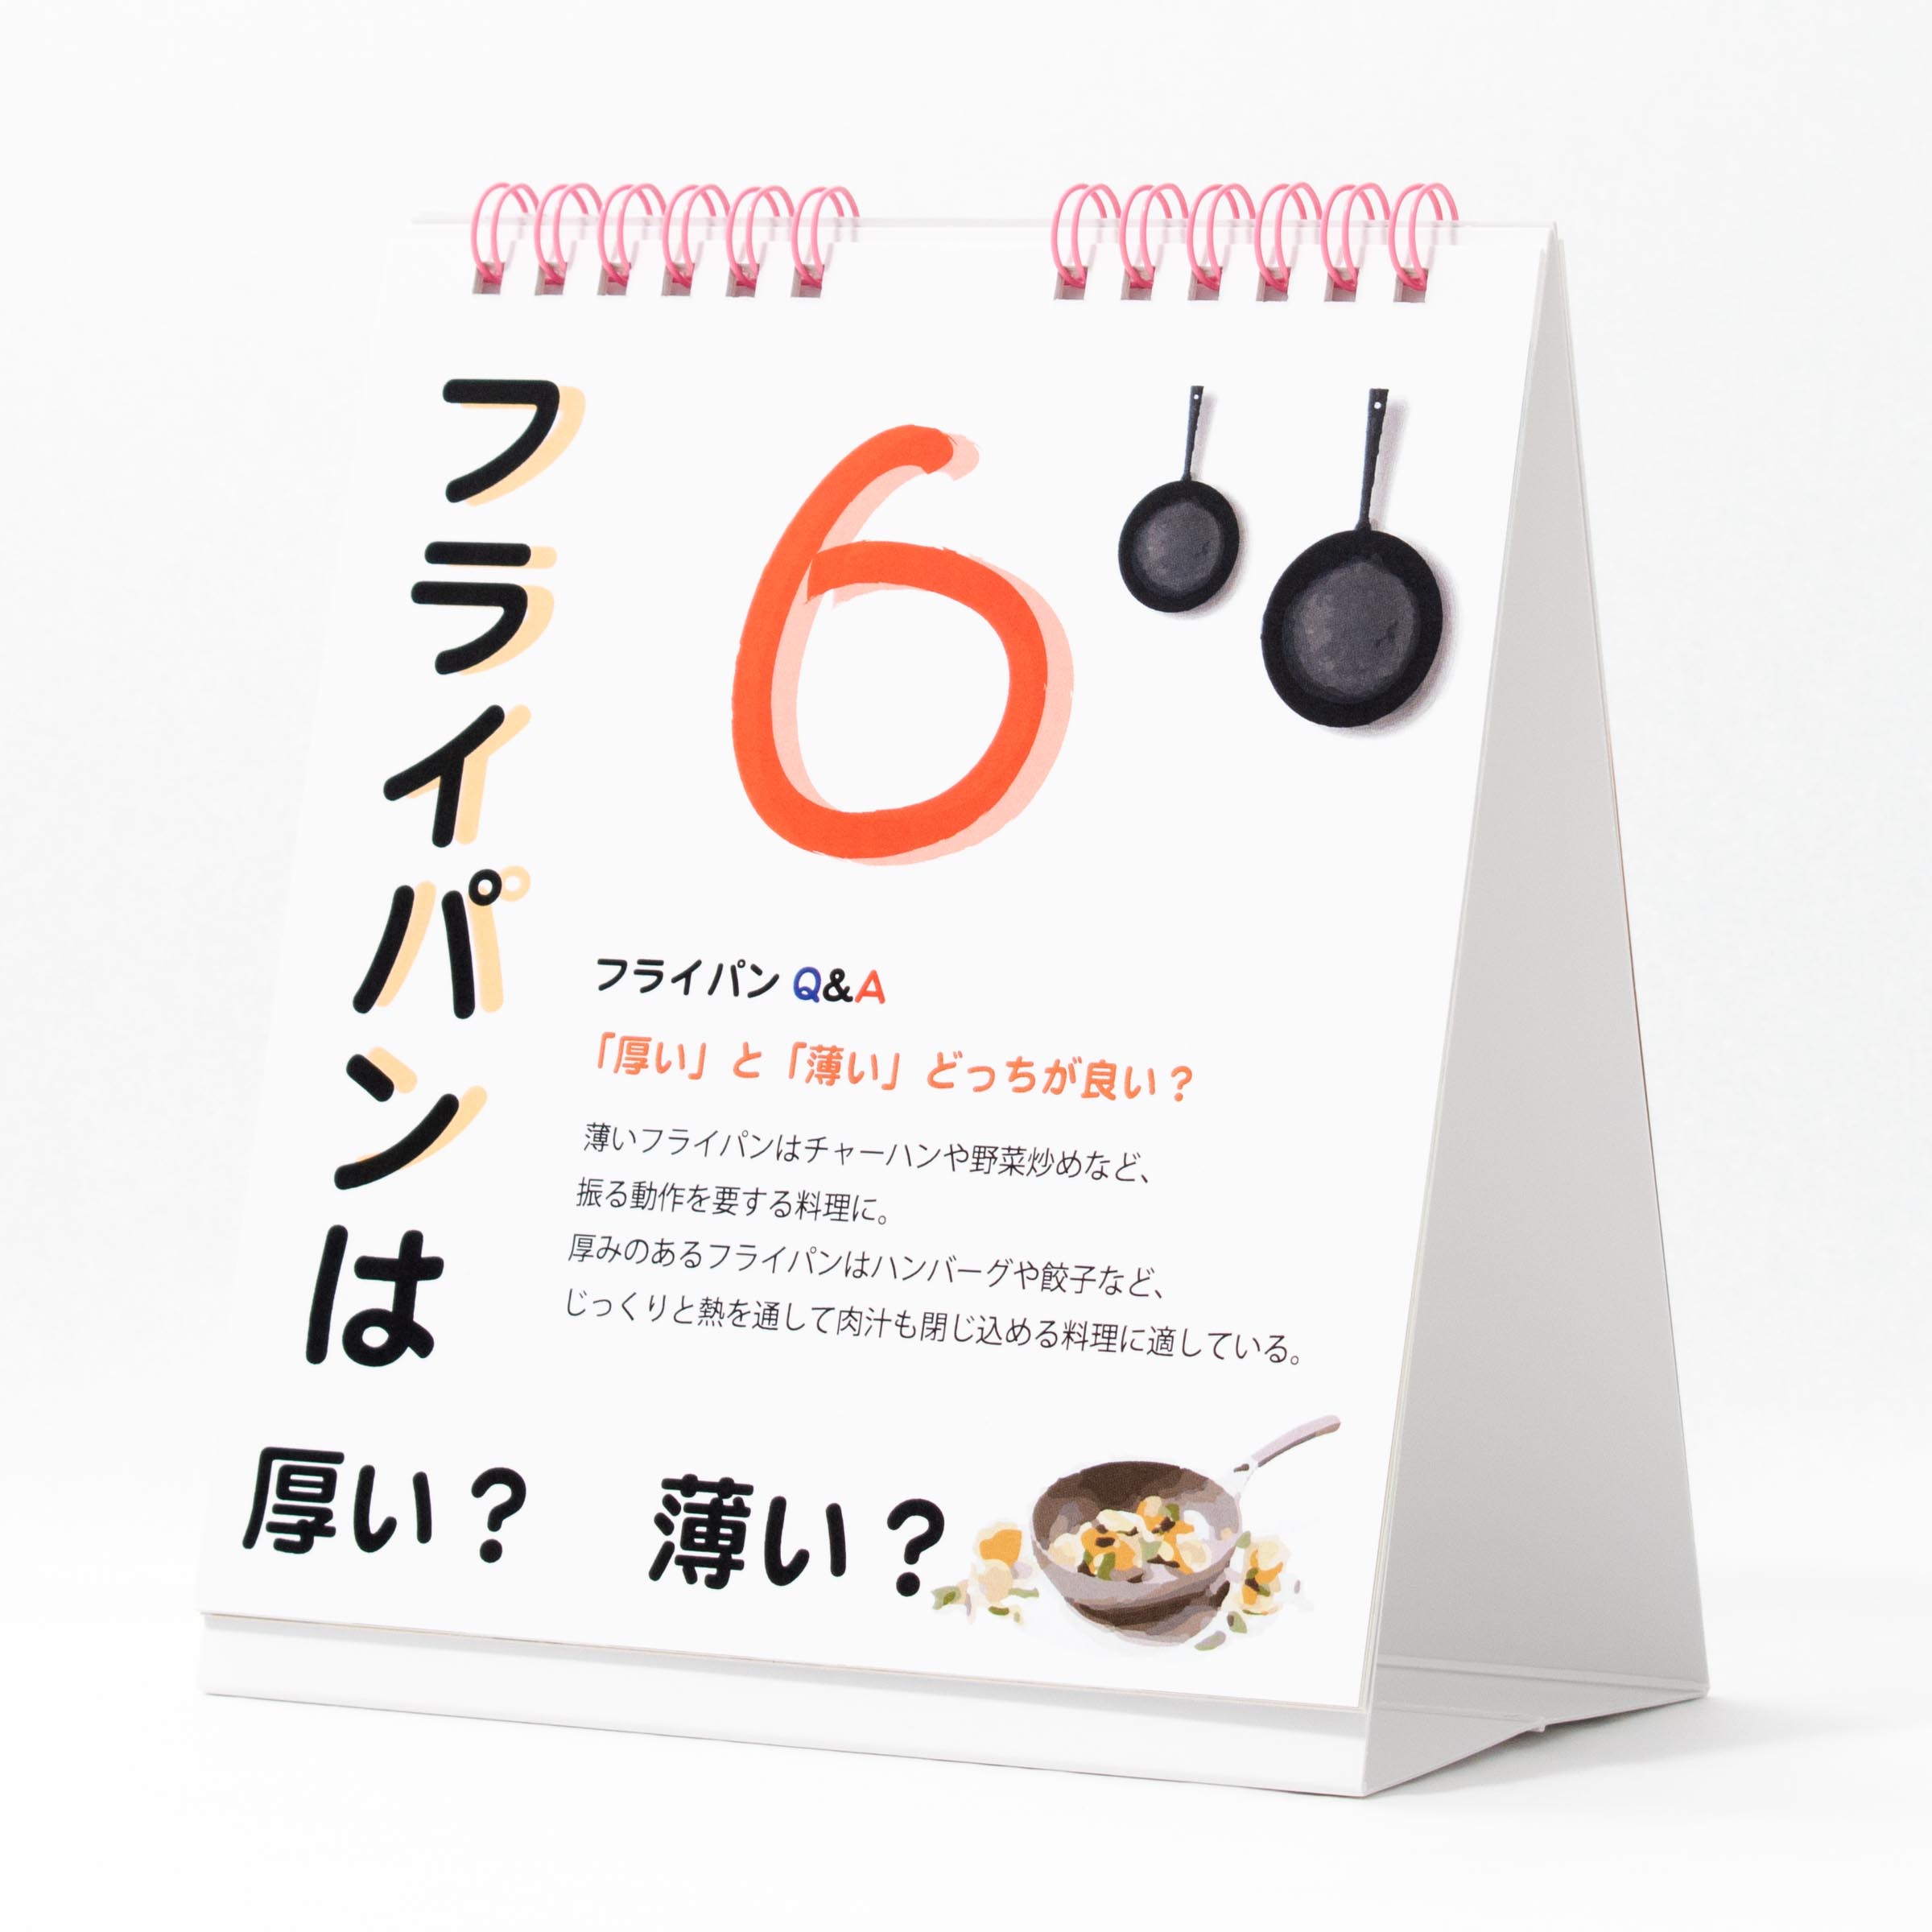 「愛知淑徳大学 様」製作のオリジナルカレンダー ギャラリー写真2